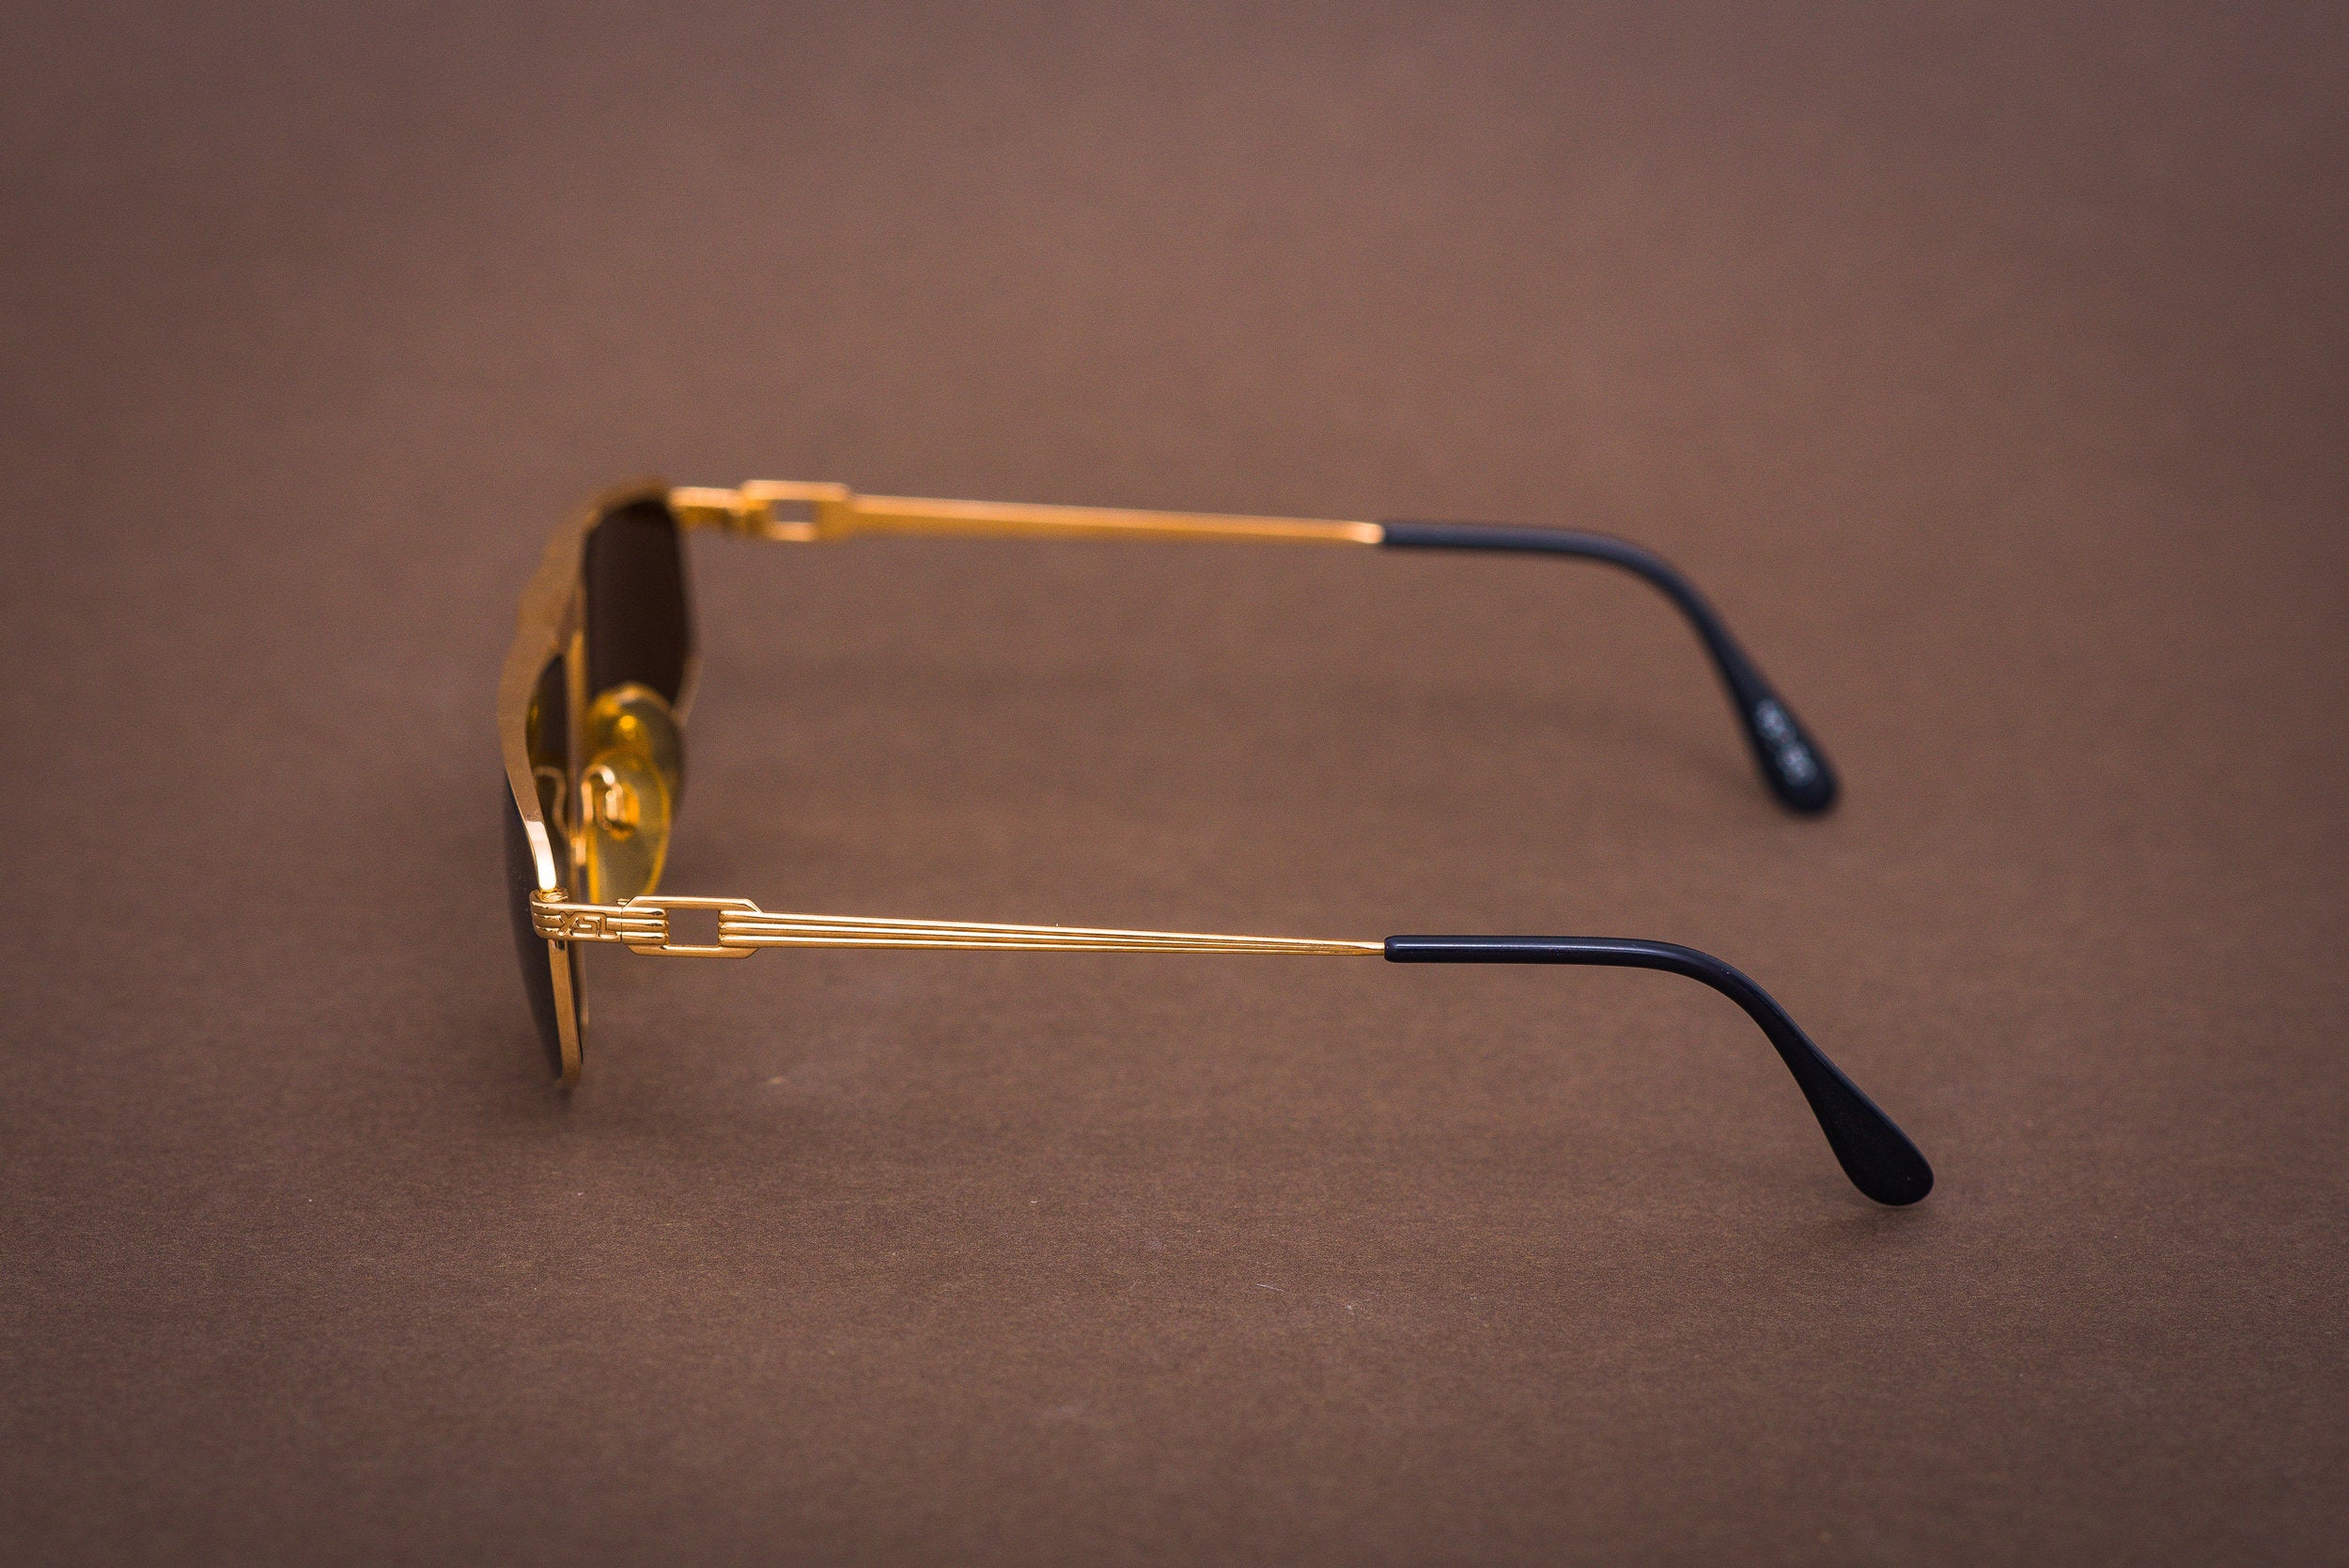 Yves Saint Laurent Asterius sunglasses